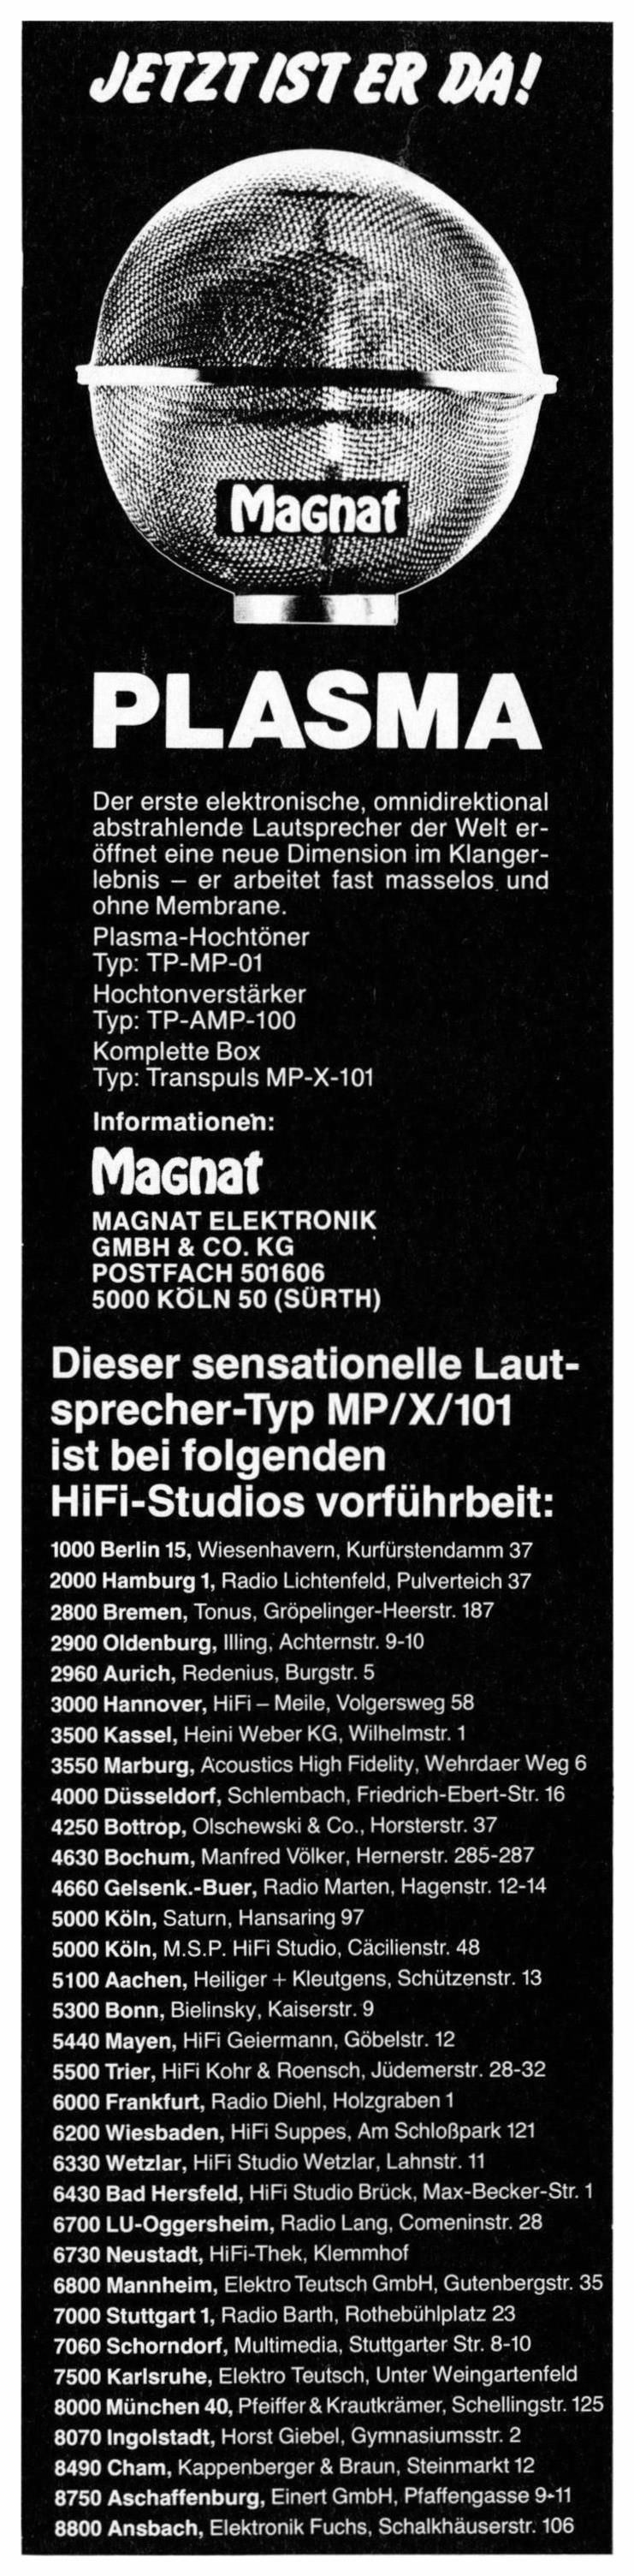 Magnat 1982 01.jpg